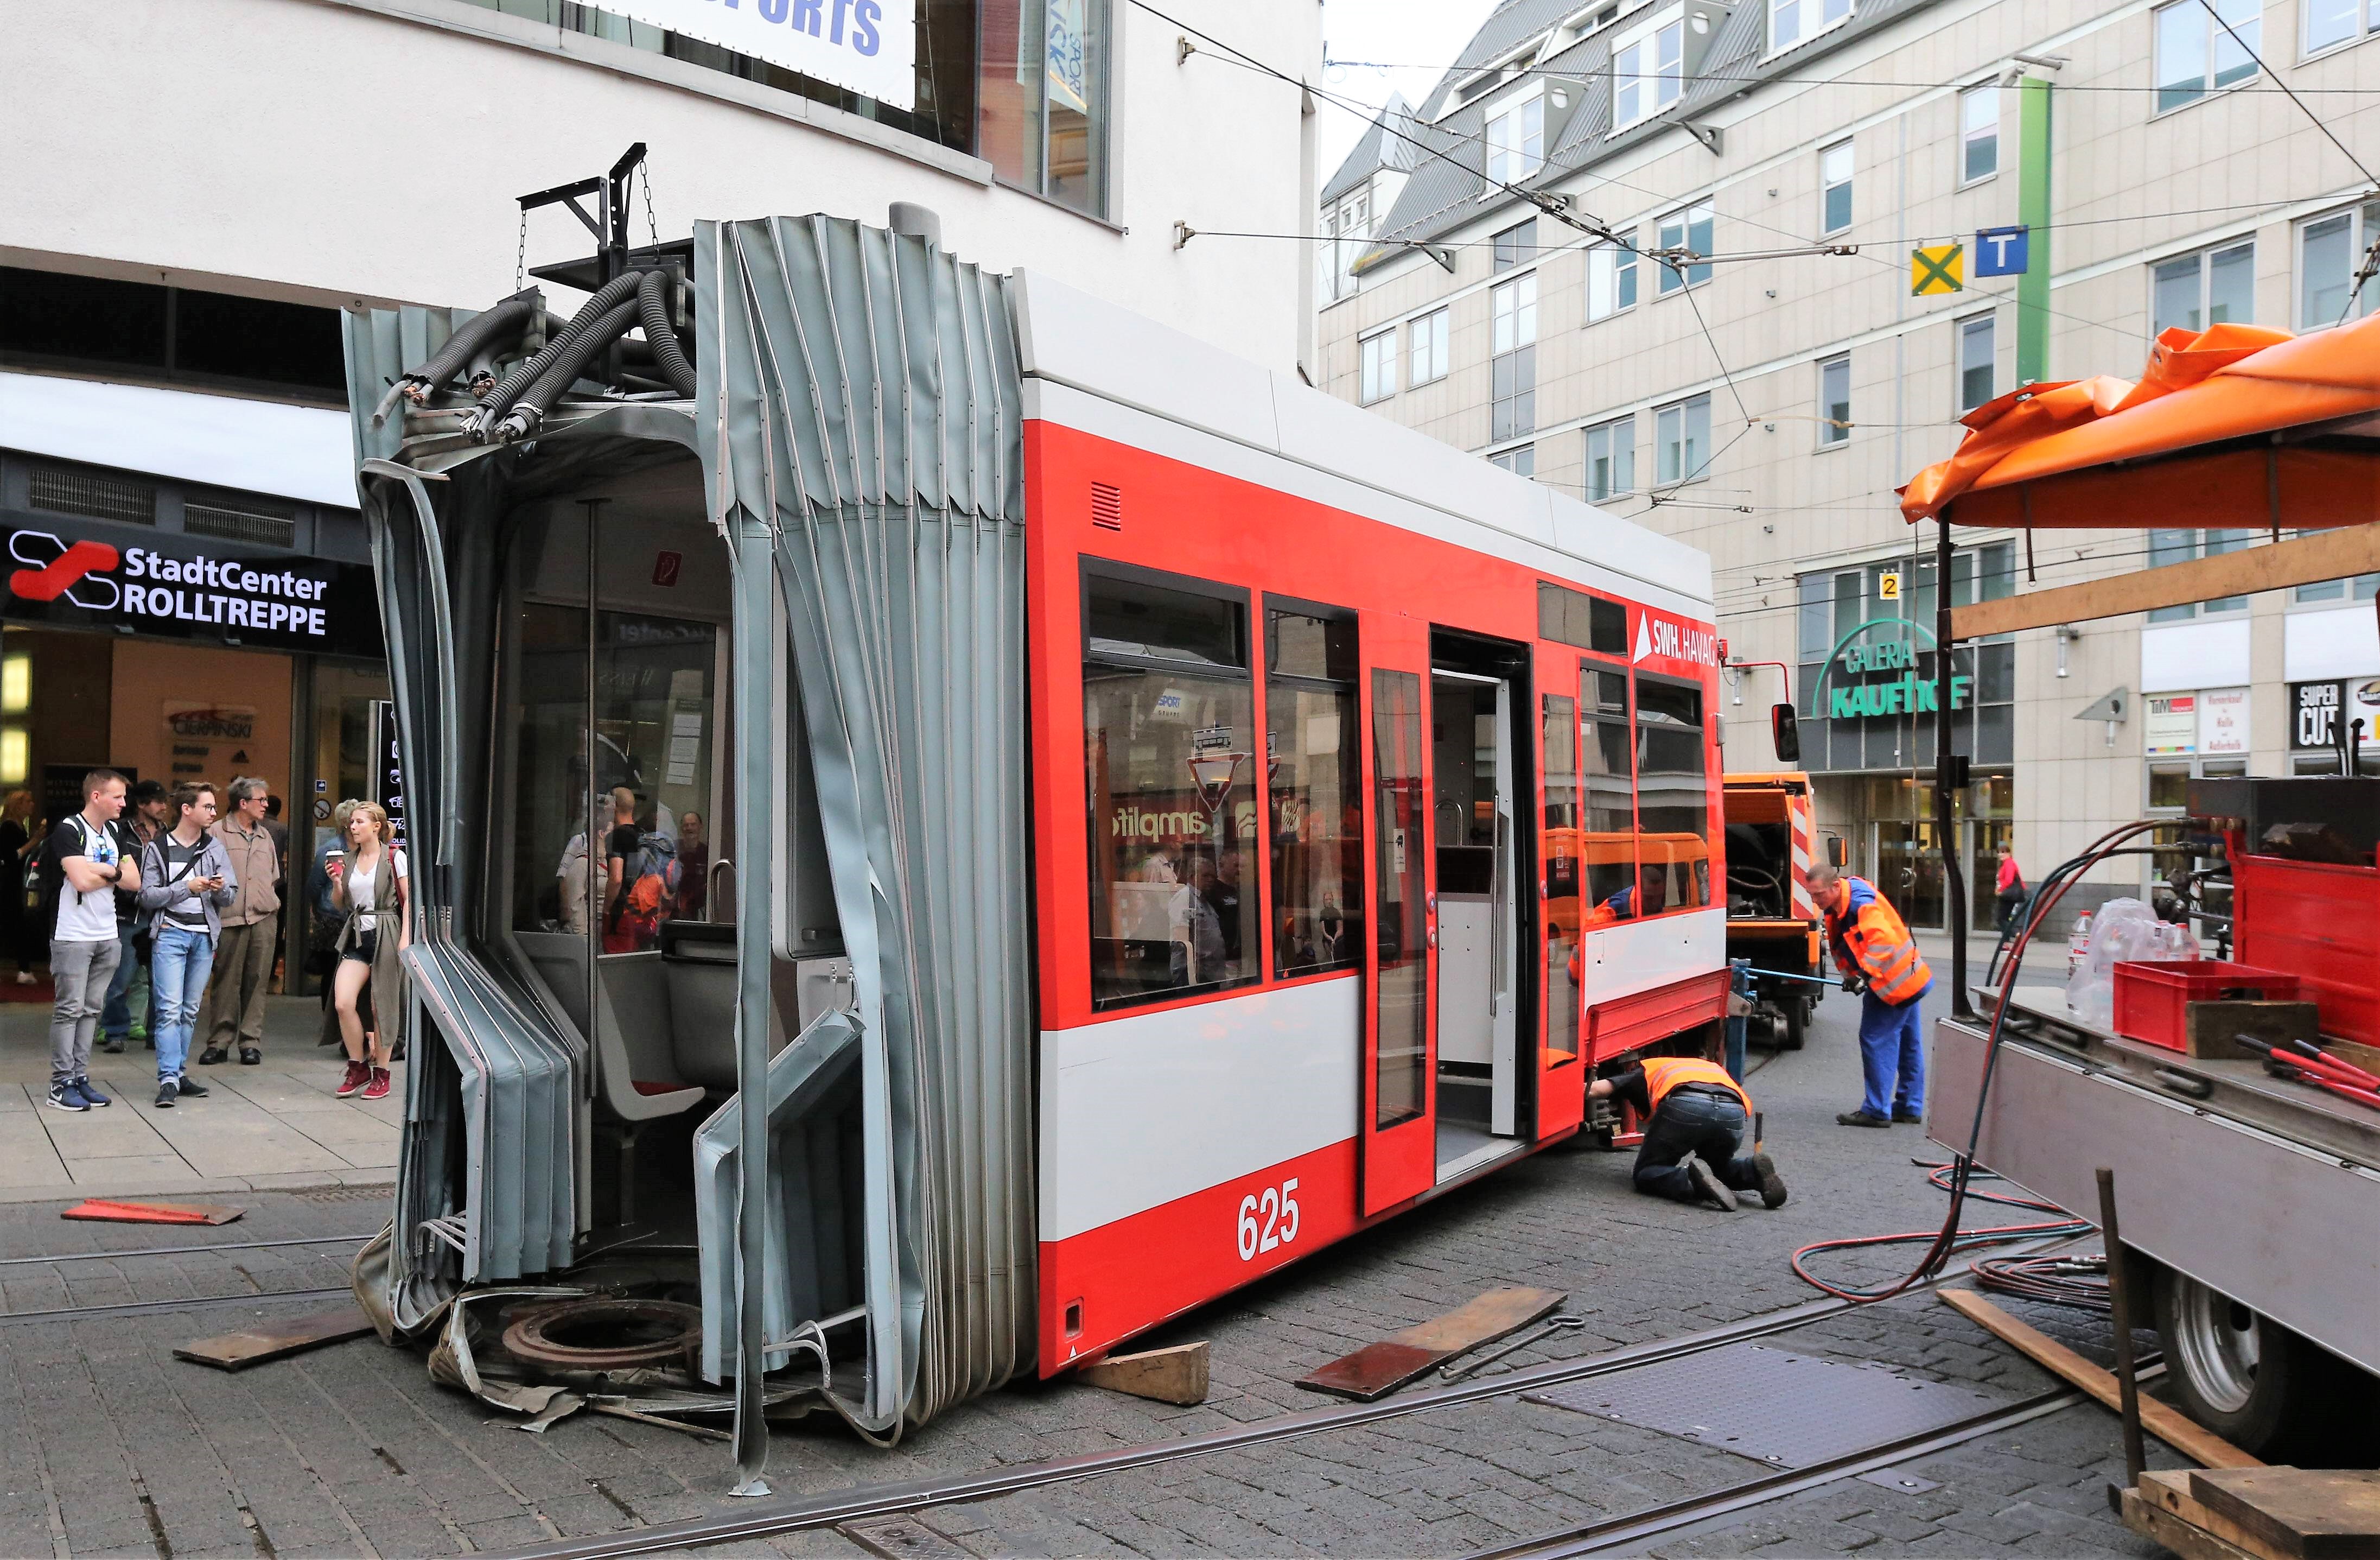 S-Bahn entgleist und rast in Cabrio - Fahrzeug komplett zerstört - 2 Menschen schwer verletzt!